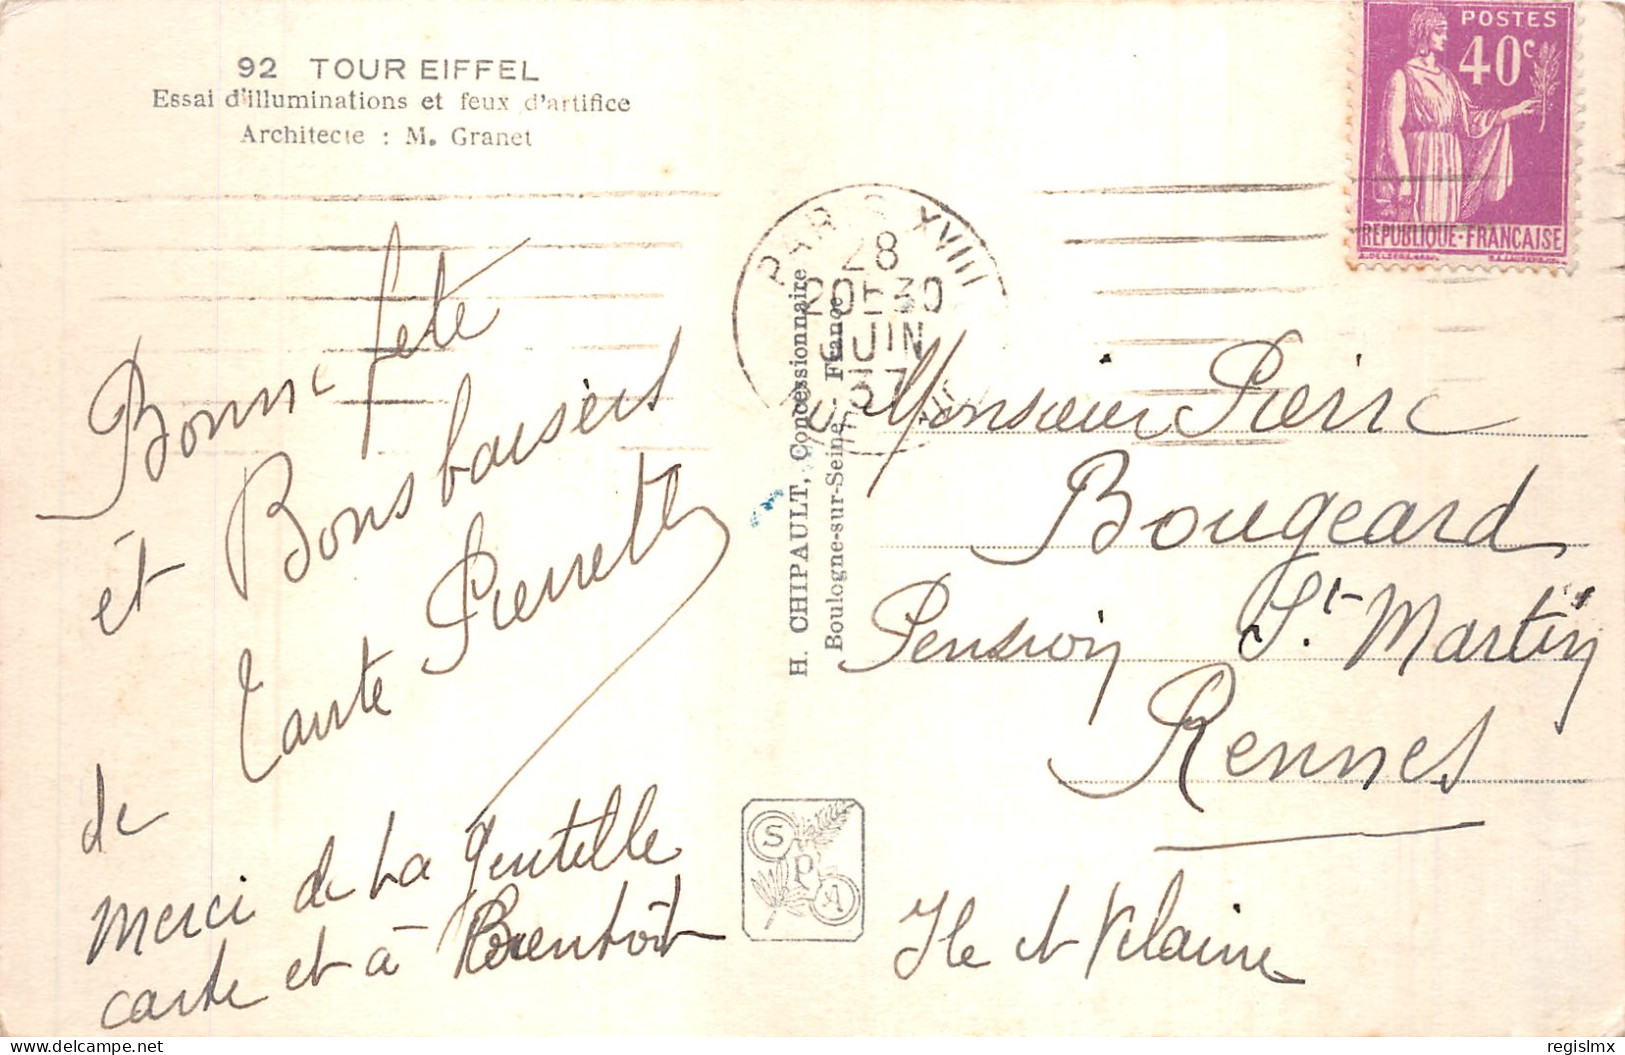 75-PARIS EXPOSITION INTERNATIONALE 1937-N°T1041-B/0389 - Ausstellungen